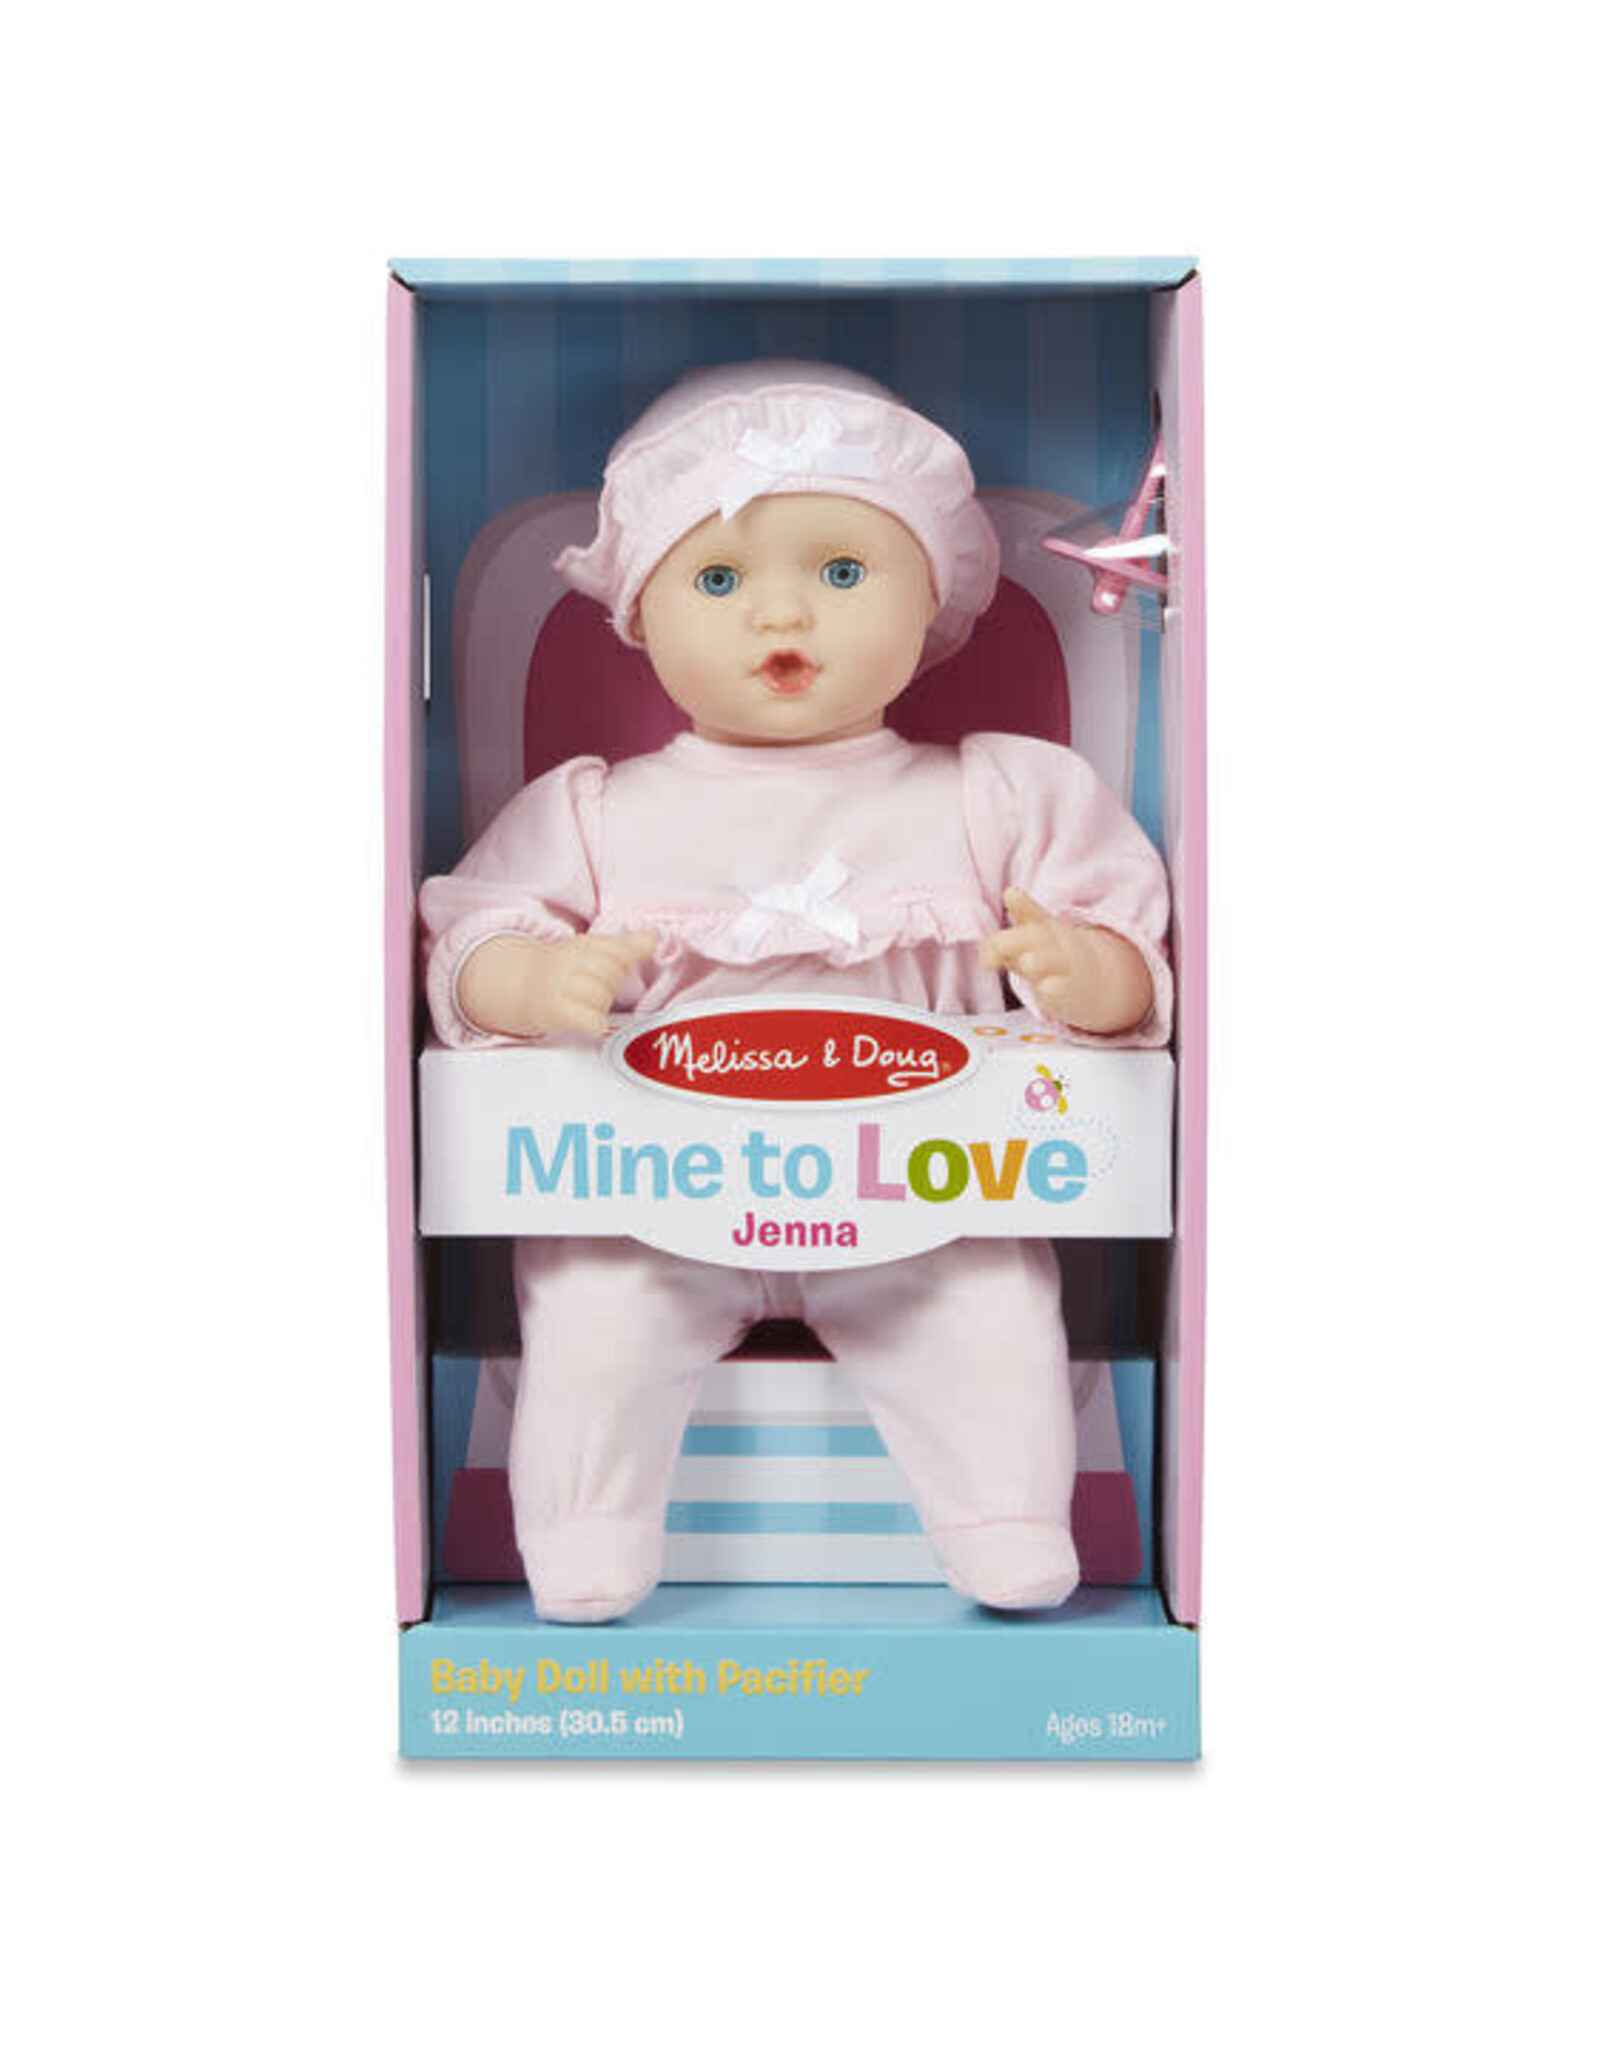 Melissa & Doug Mine to Love Jenna 12" Baby Doll